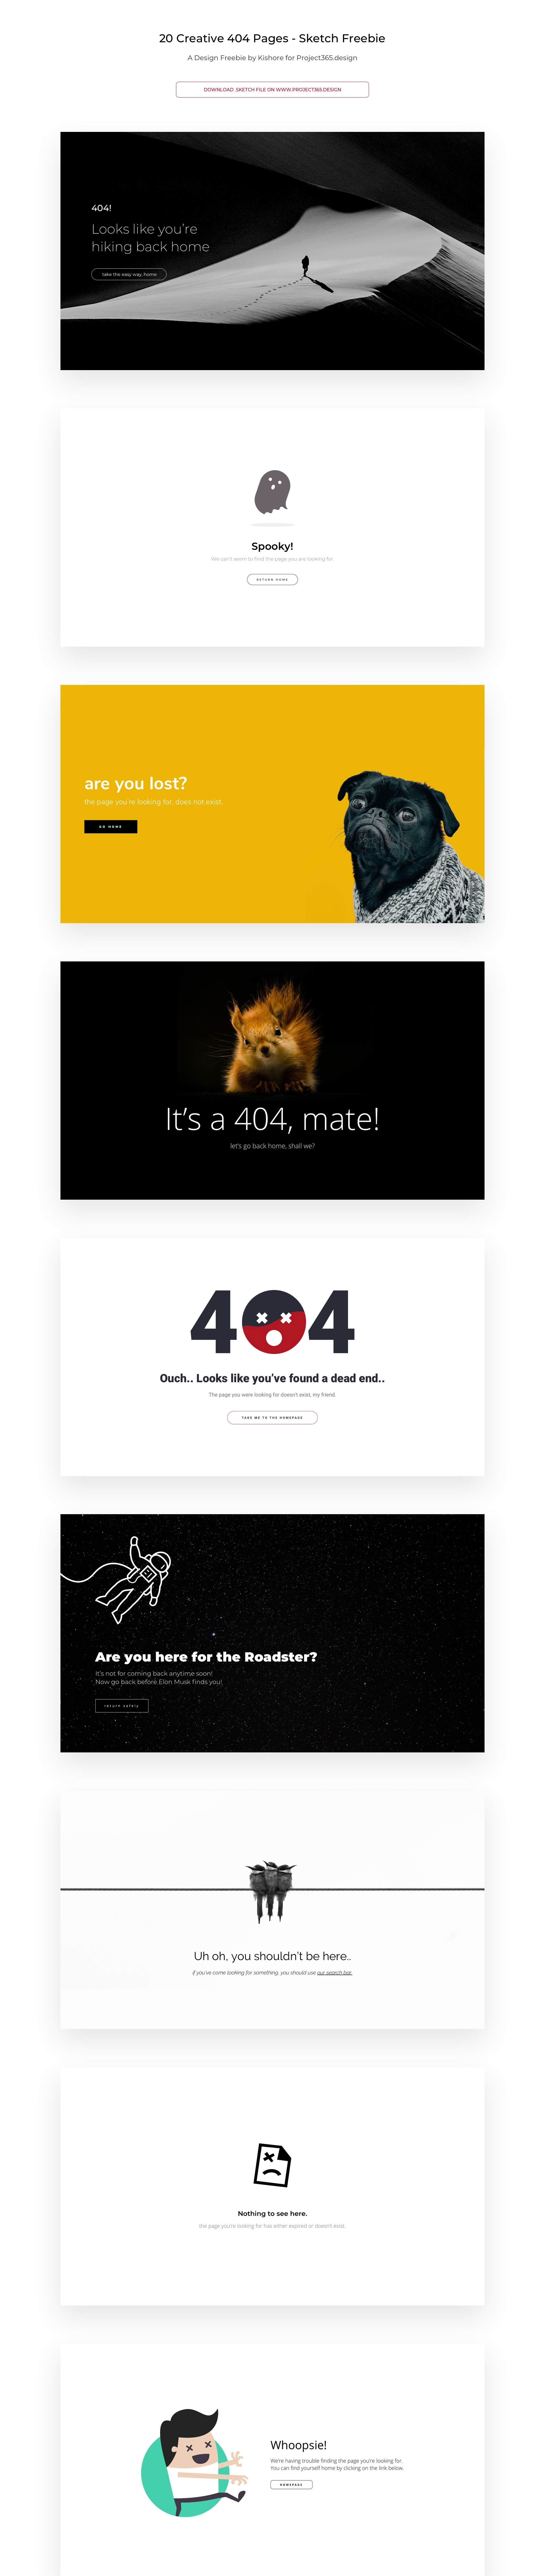 20组创意404页面设计模板素材免费下载 Creative